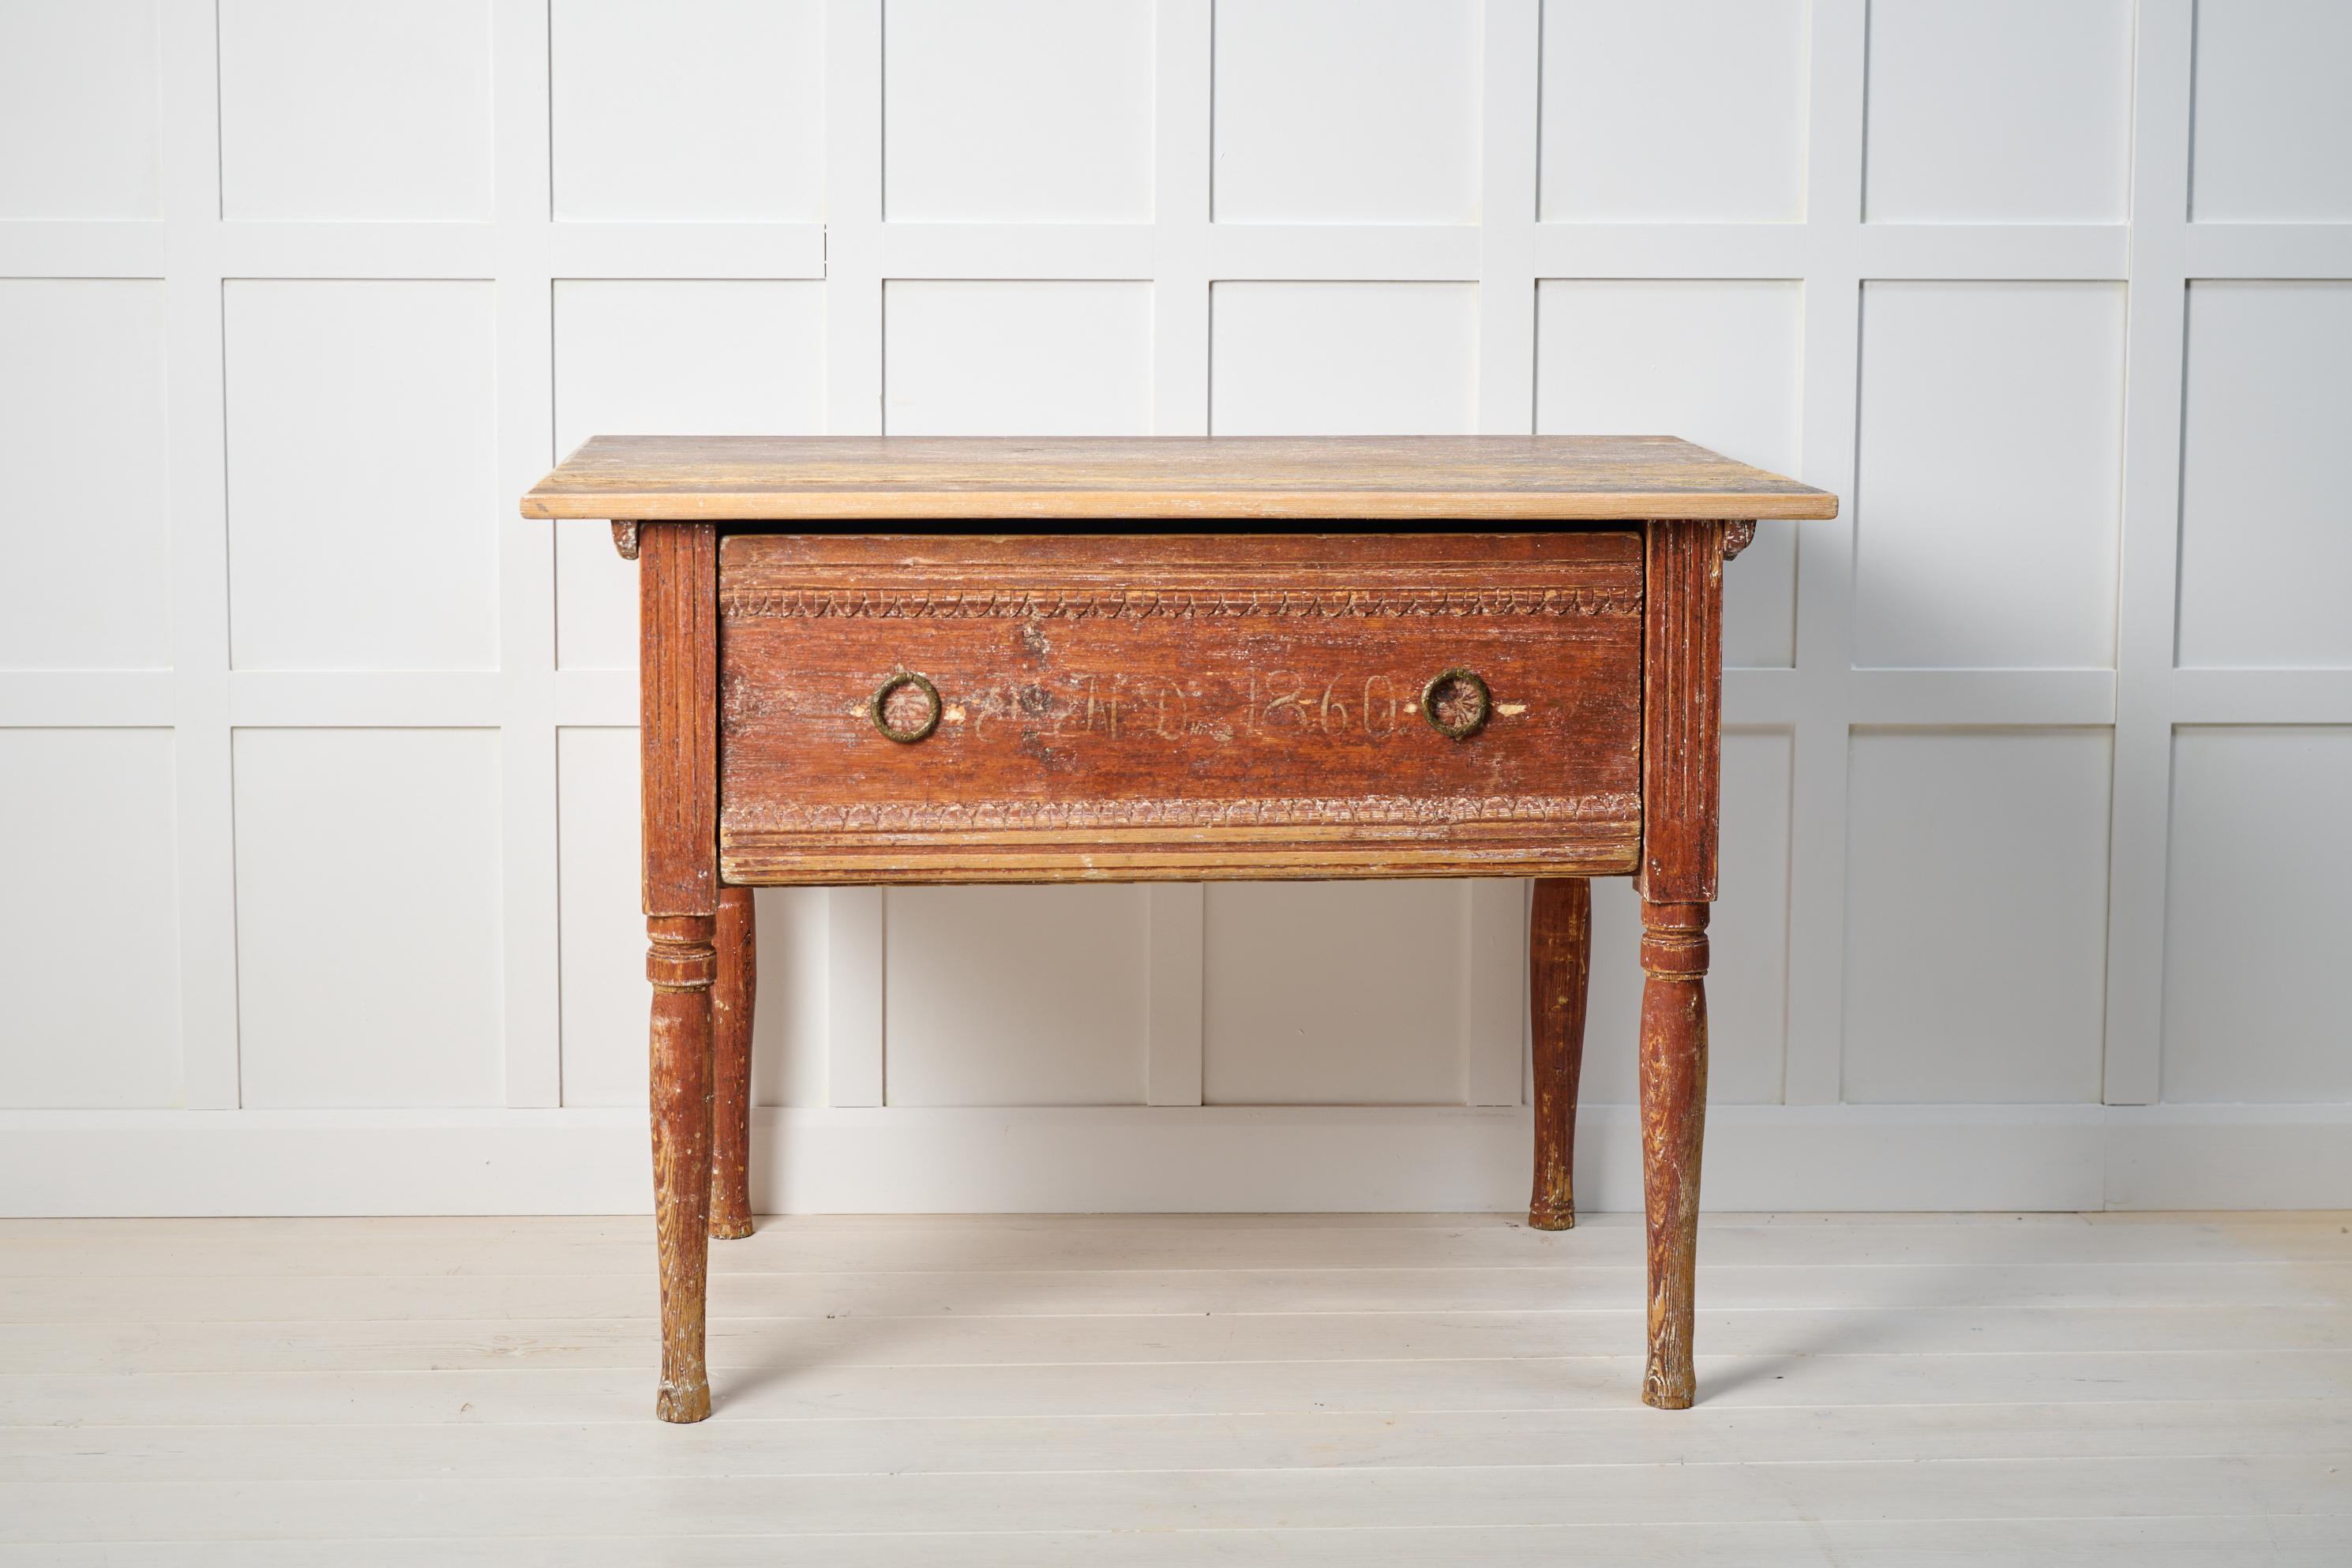 Antiker schwedischer Landhaustisch von 1860. Der Tisch ist ein echtes Landhausmöbel, das von Hand bis auf die erste Farbschicht trocken geschabt wurde. Die Schublade ist mit einer Jahreszahl und Initialen versehen. Original-Schubladengriffe.